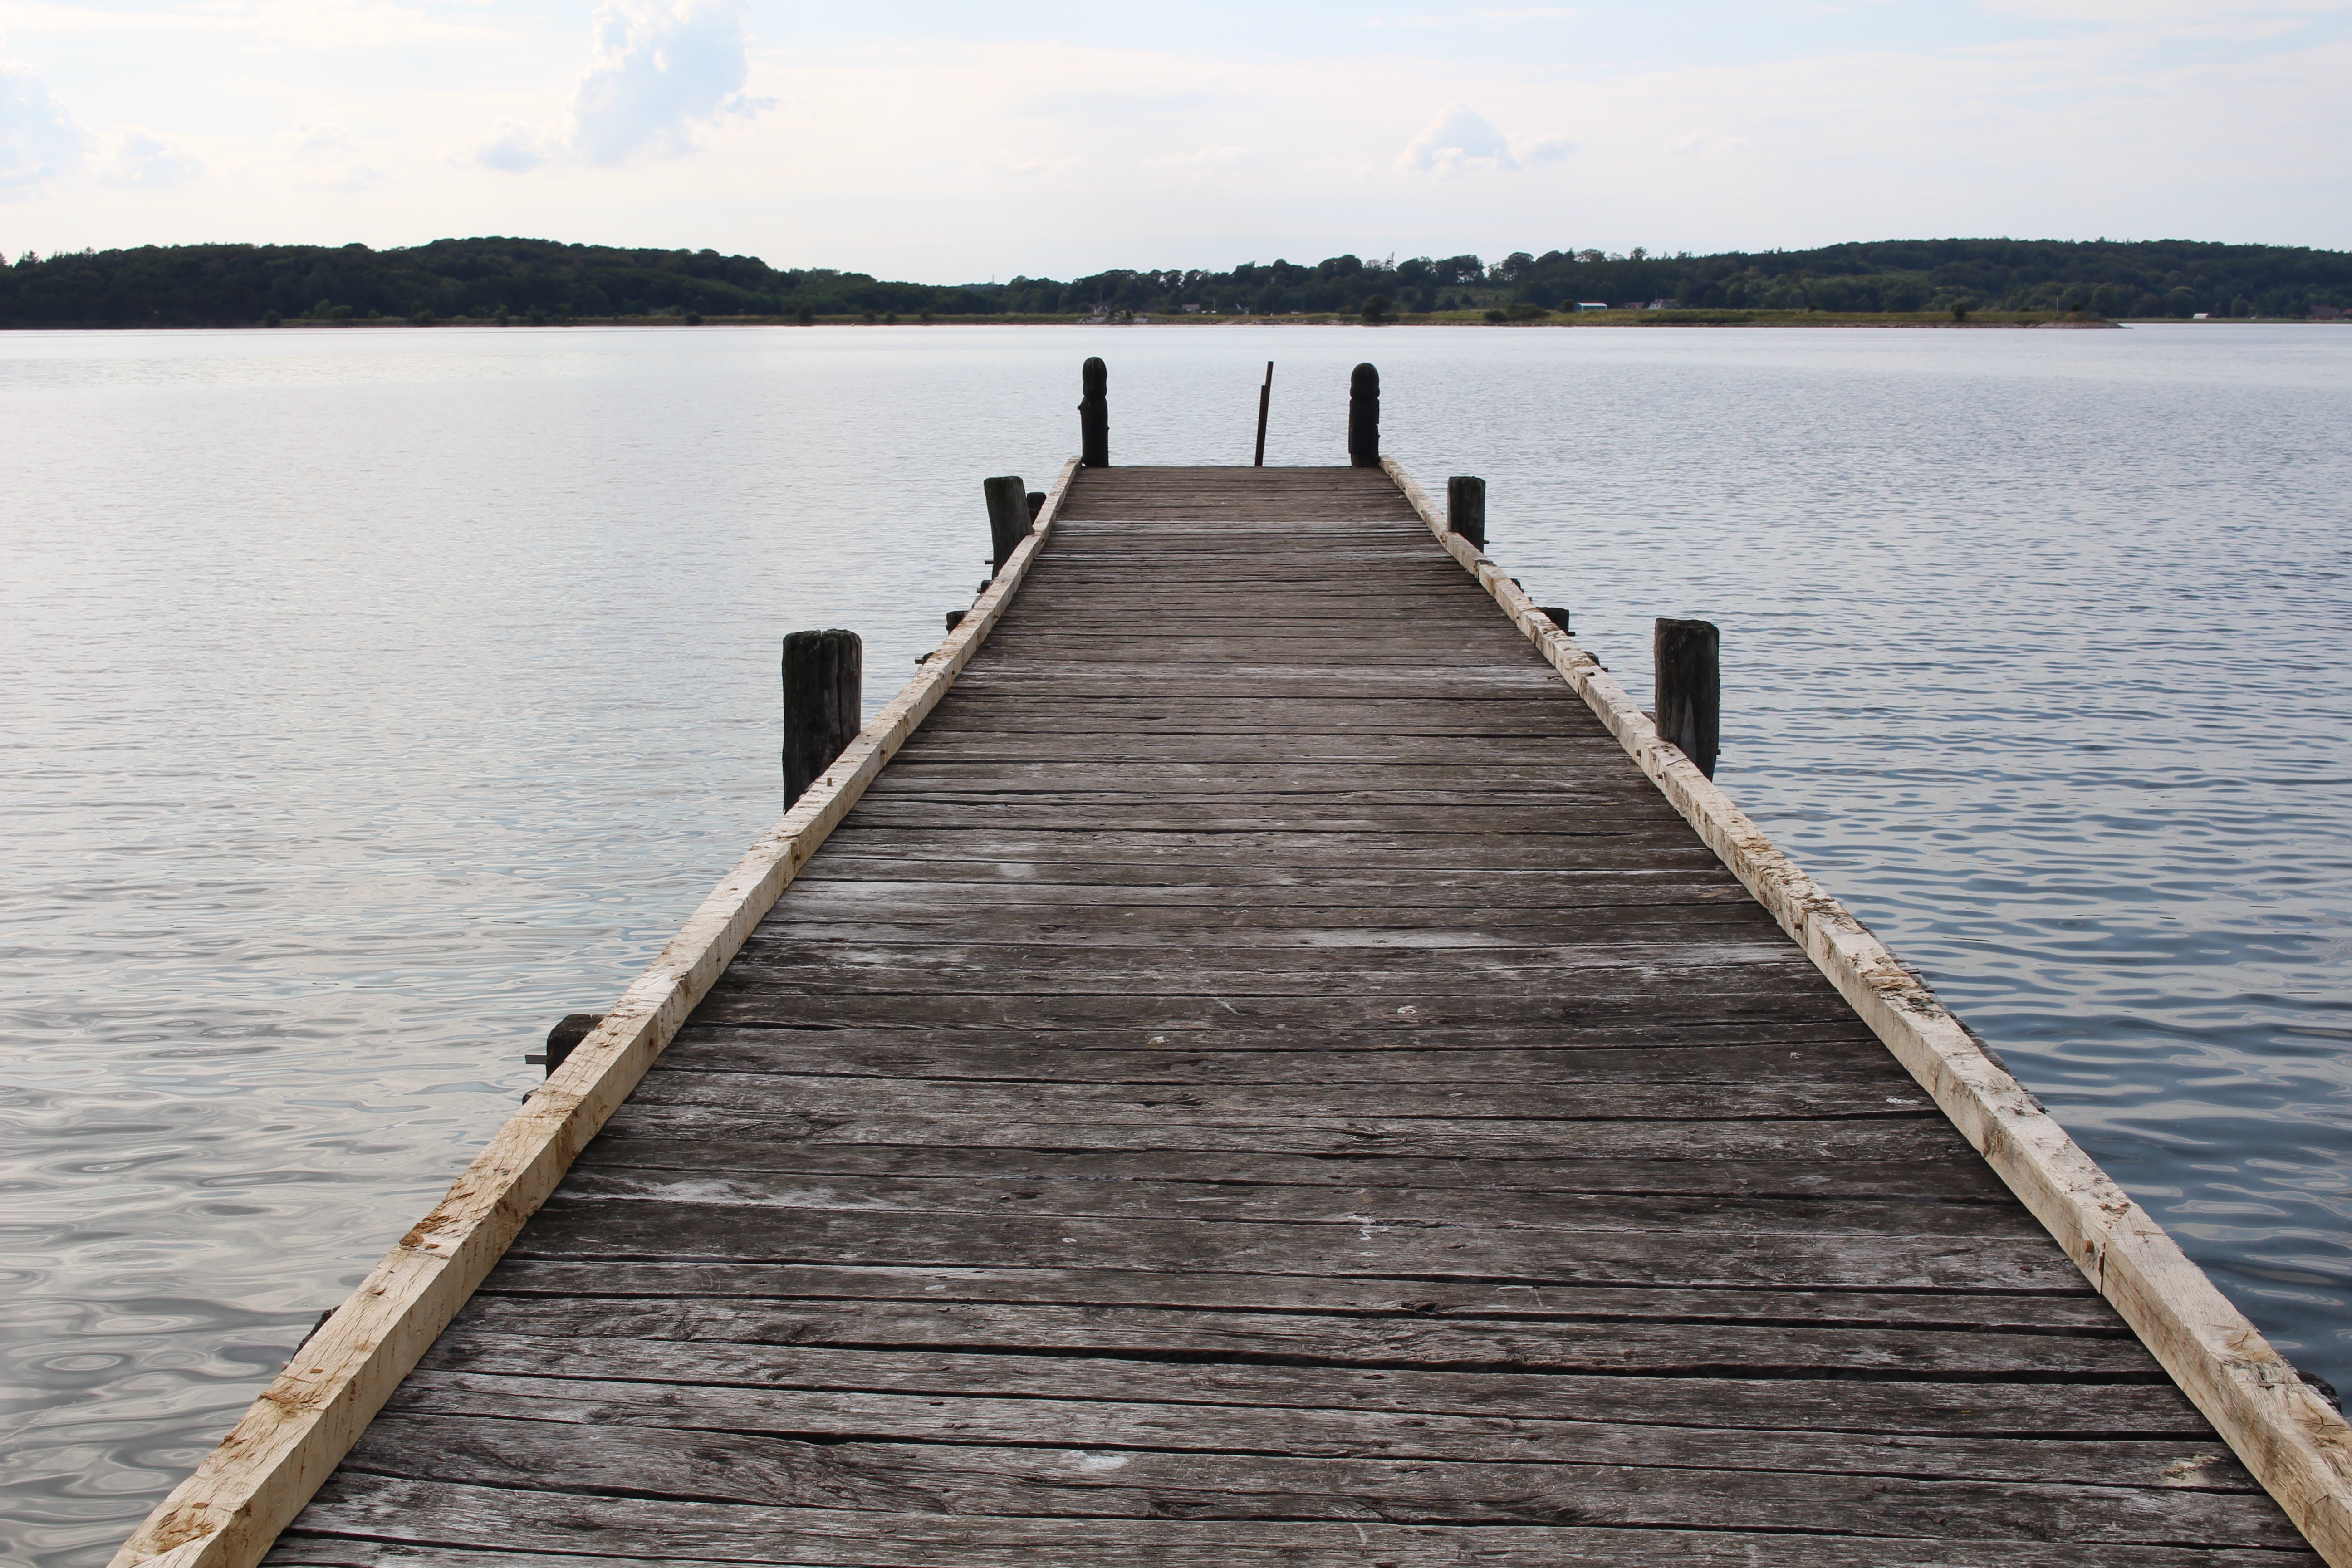 Free Images : landscape, water, nature, dock, boardwalk, wood, boat ...